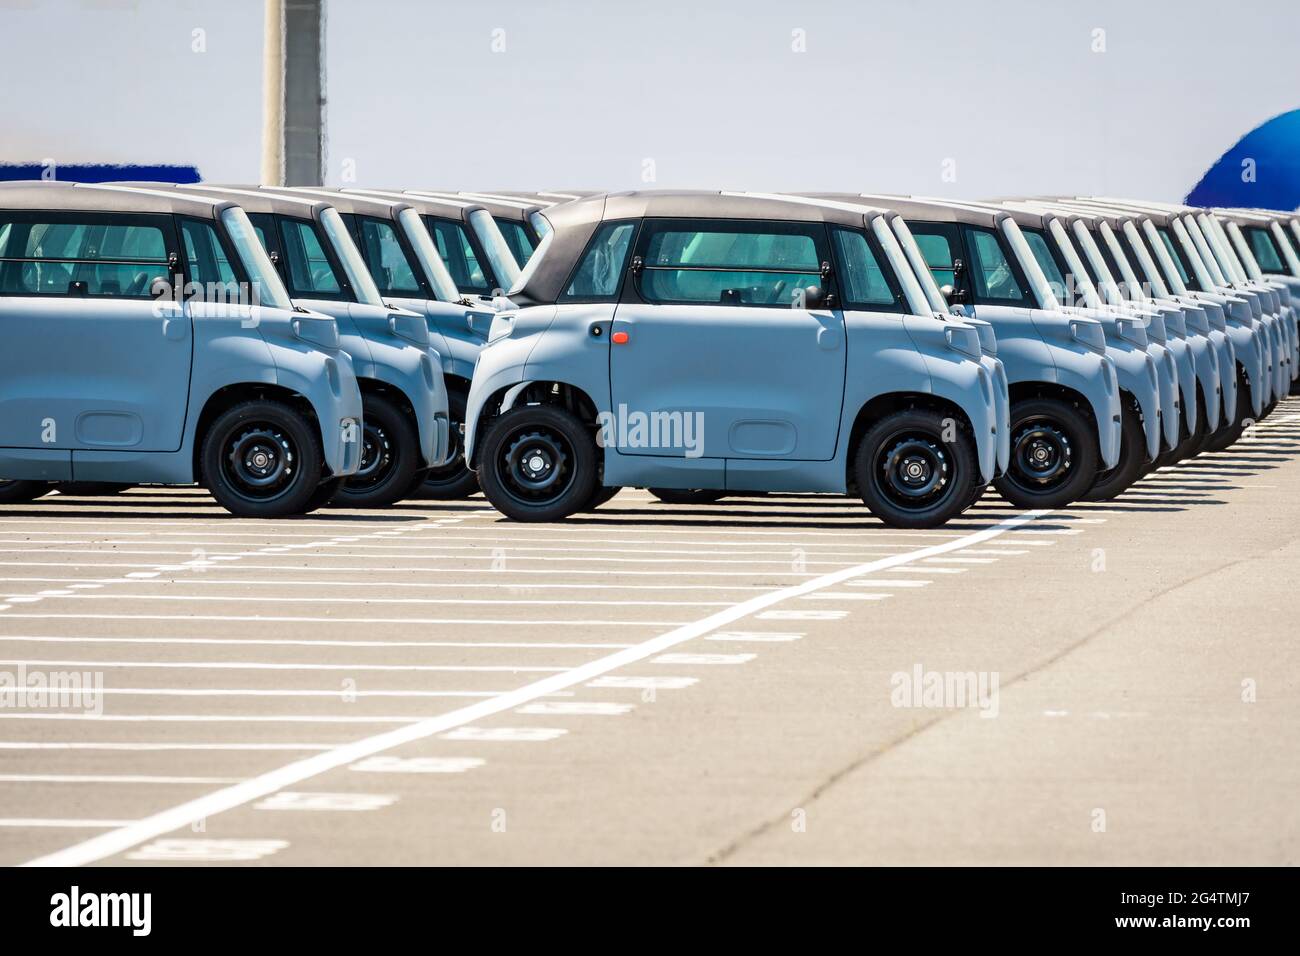 Auf dem Parkplatz des Roll-on/Roll-off-Terminals (Ro-Ro) im Hafen von Le Havre Reihen sich brandneue, lizenzfreie Citroën AMI-Elektroautos im Freien an. Stockfoto